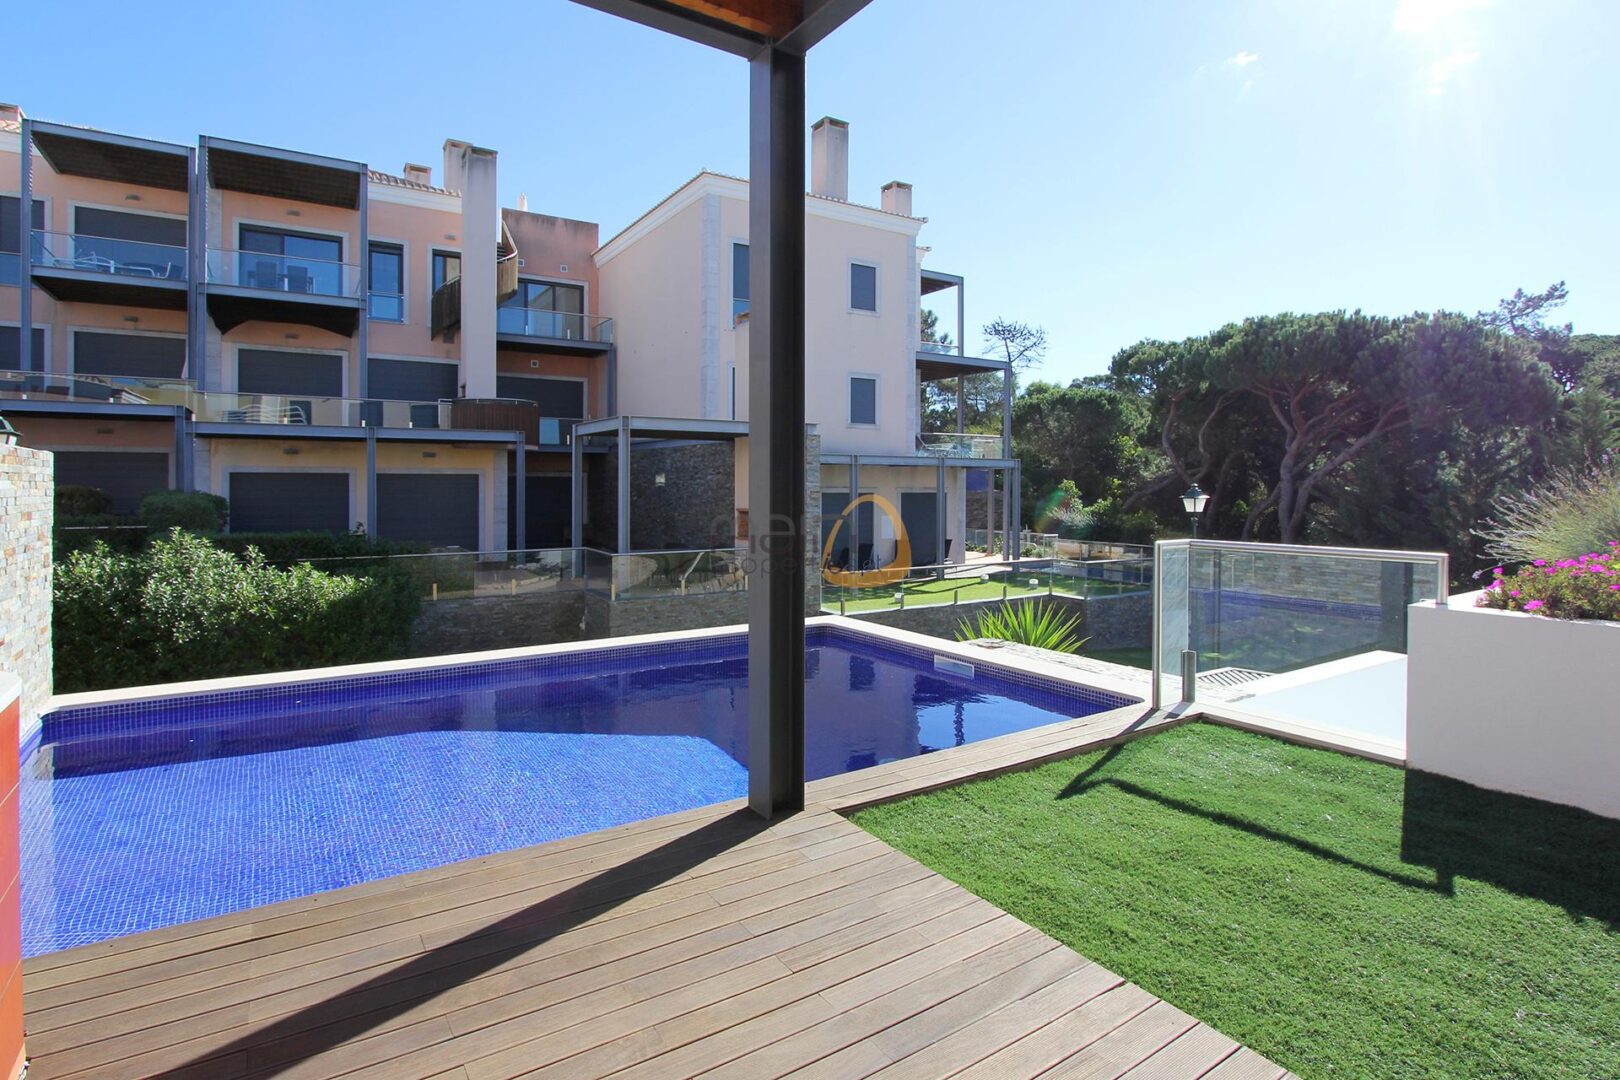 2 bedroom modern villa with private pool in Vale do Lobo